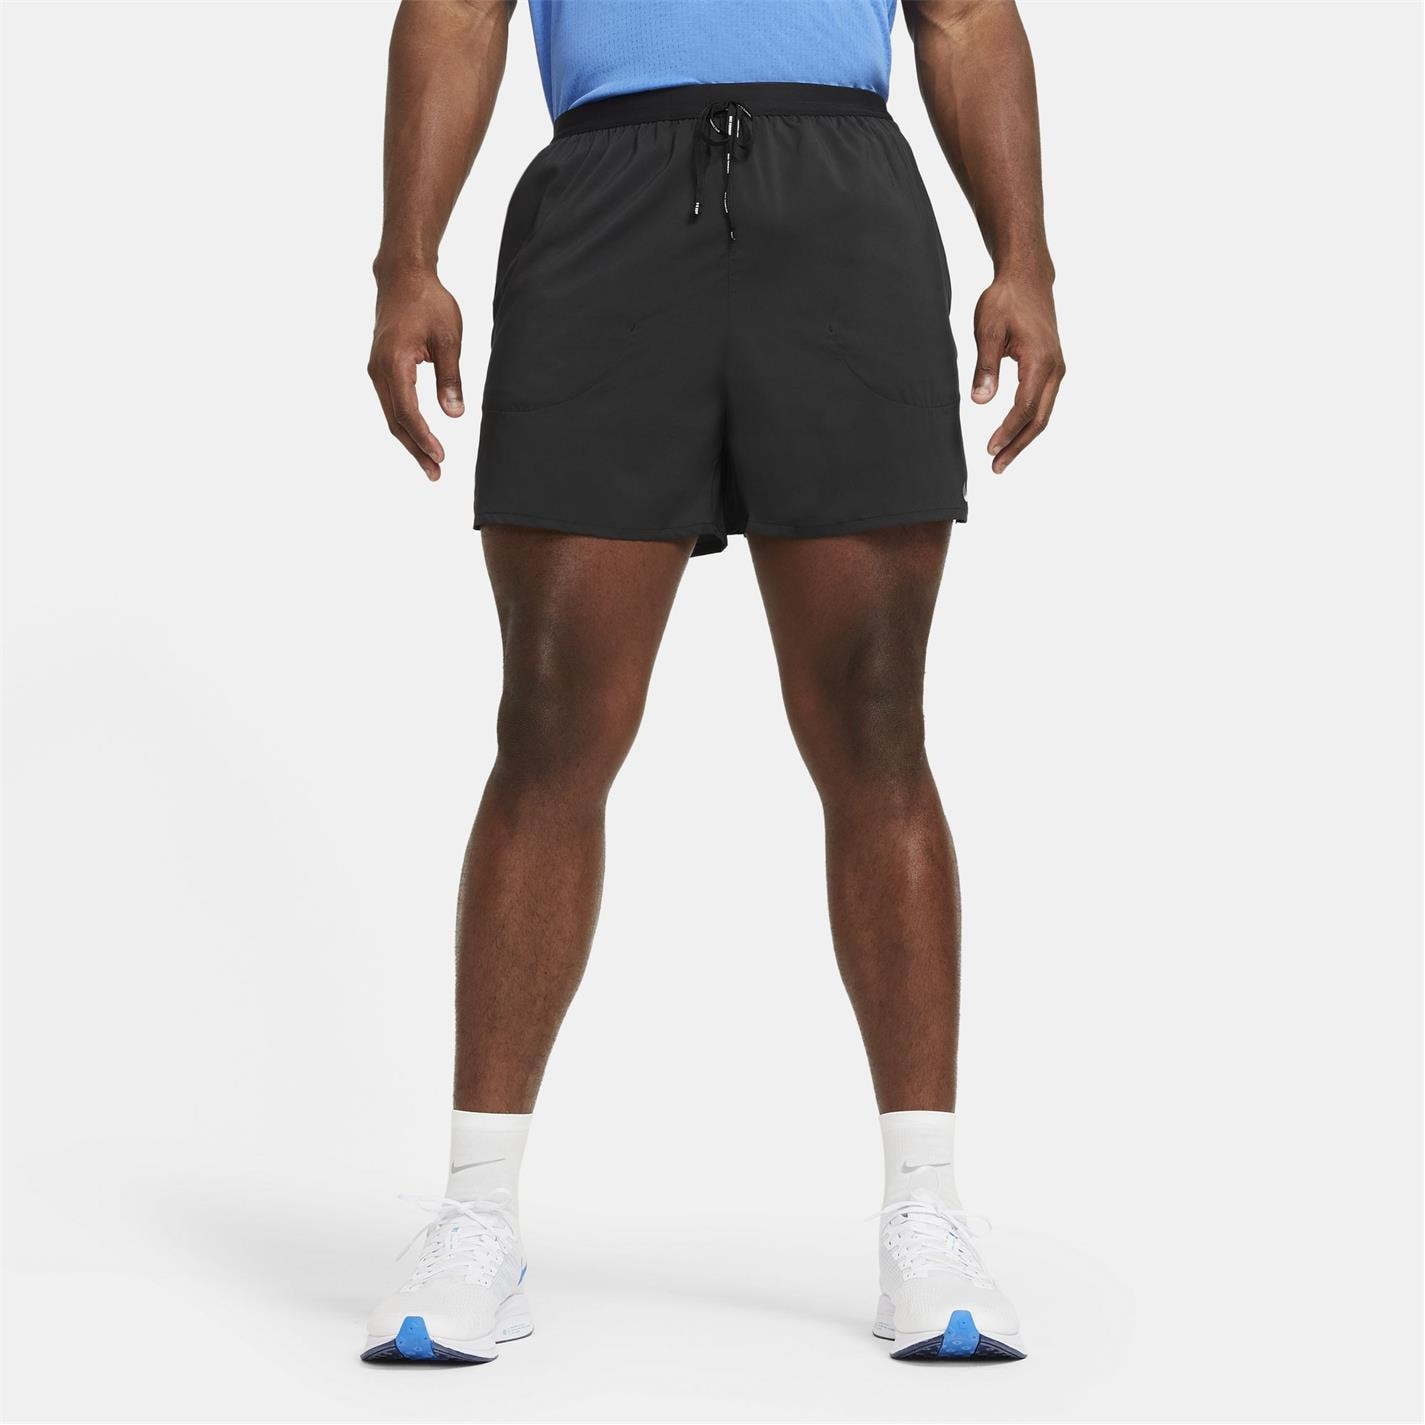 Pantaloni scurti Nike Flex 7in pentru Barbati negru